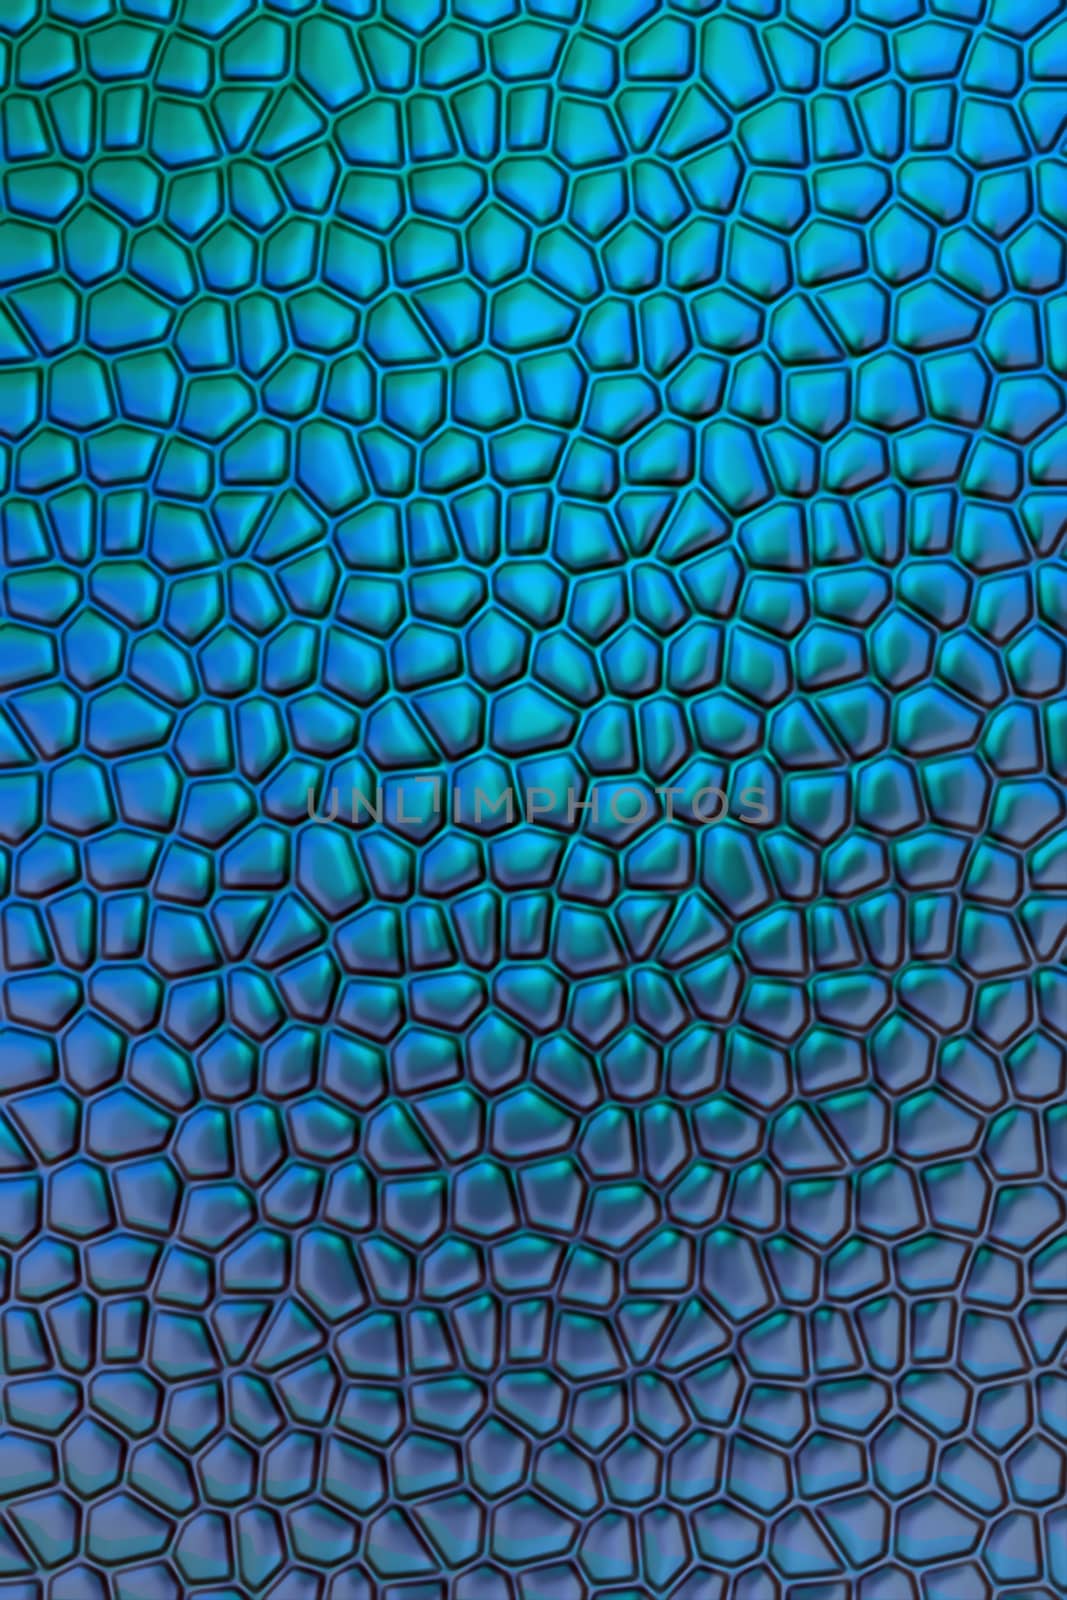 Convex mosaic by Krakatuk